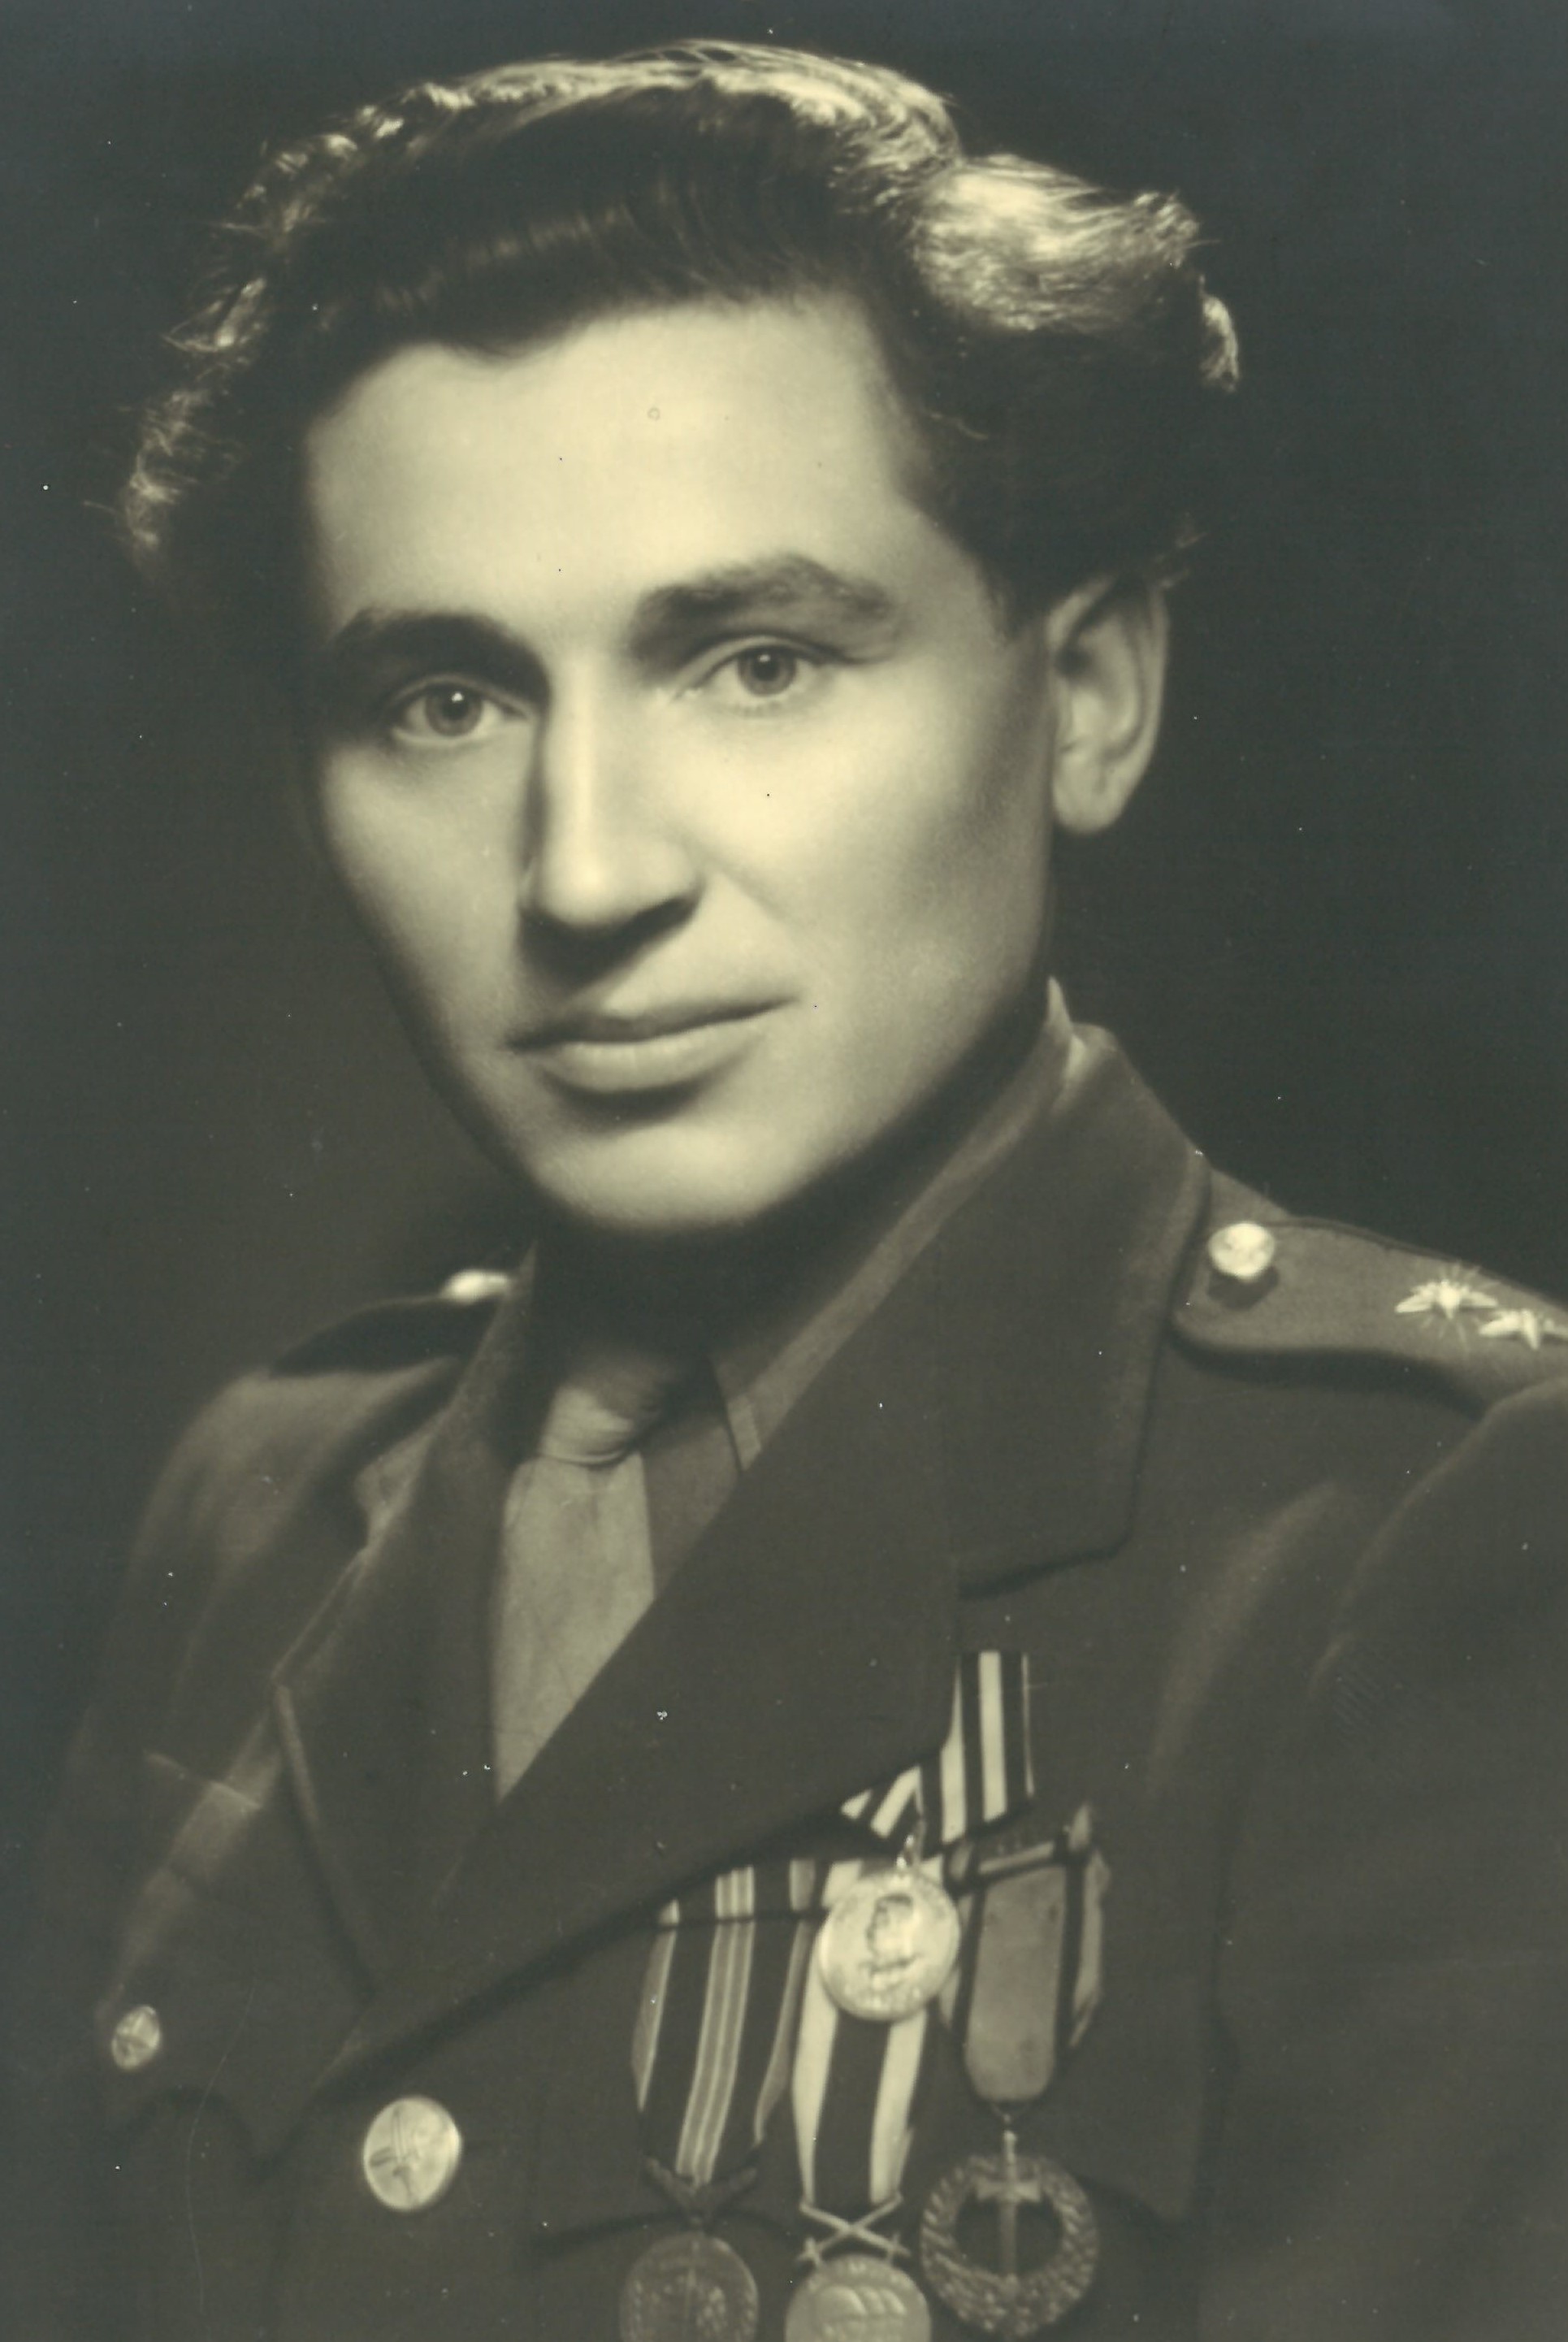 Vasil Timkovič shortly after the war